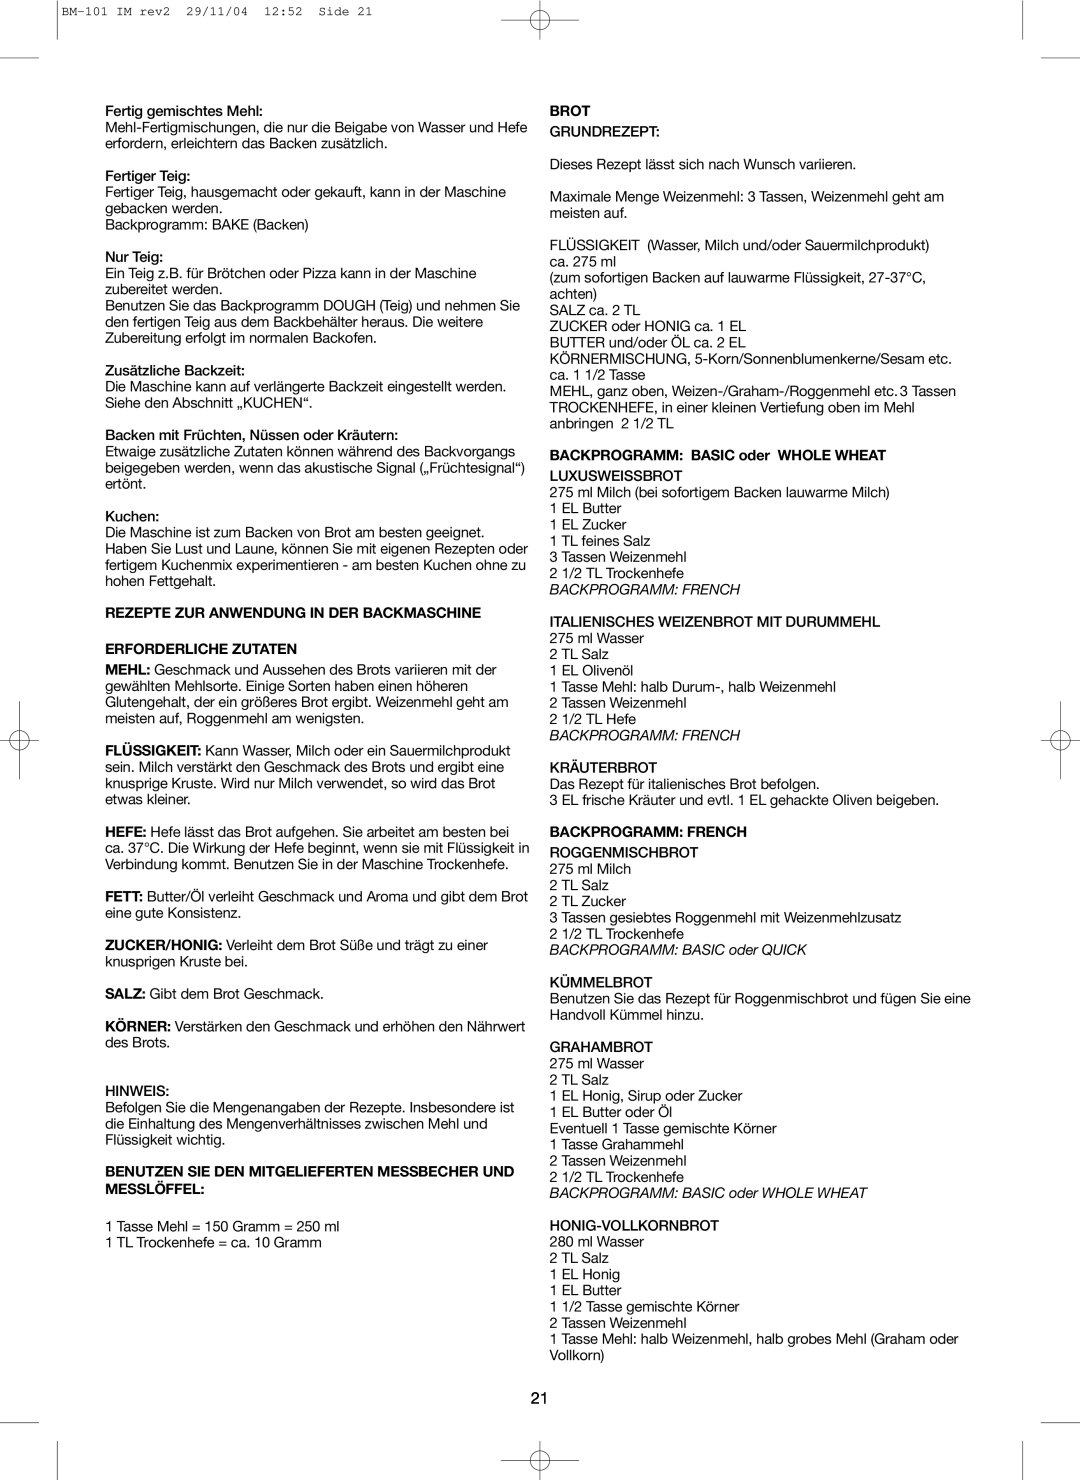 Melissa 643-042 manual Rezepte Zur Anwendung In Der Backmaschine, Erforderliche Zutaten, Brot, Backprogramm: French 